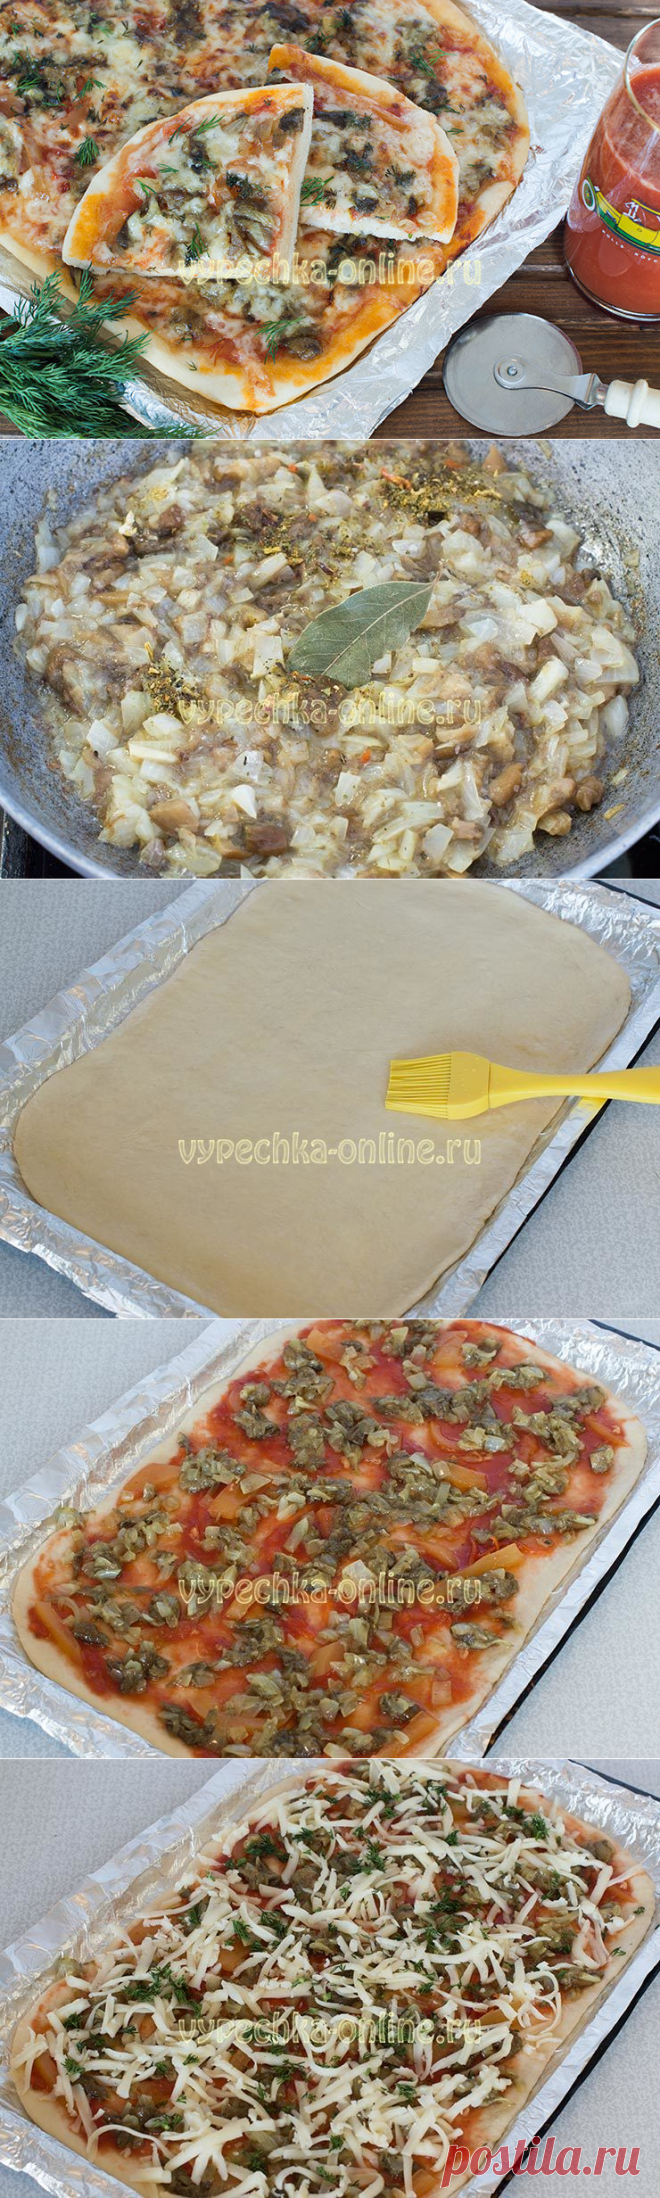 грибная пицца рецепт в домашних условиях в духовке пошаговый рецепт фото 43